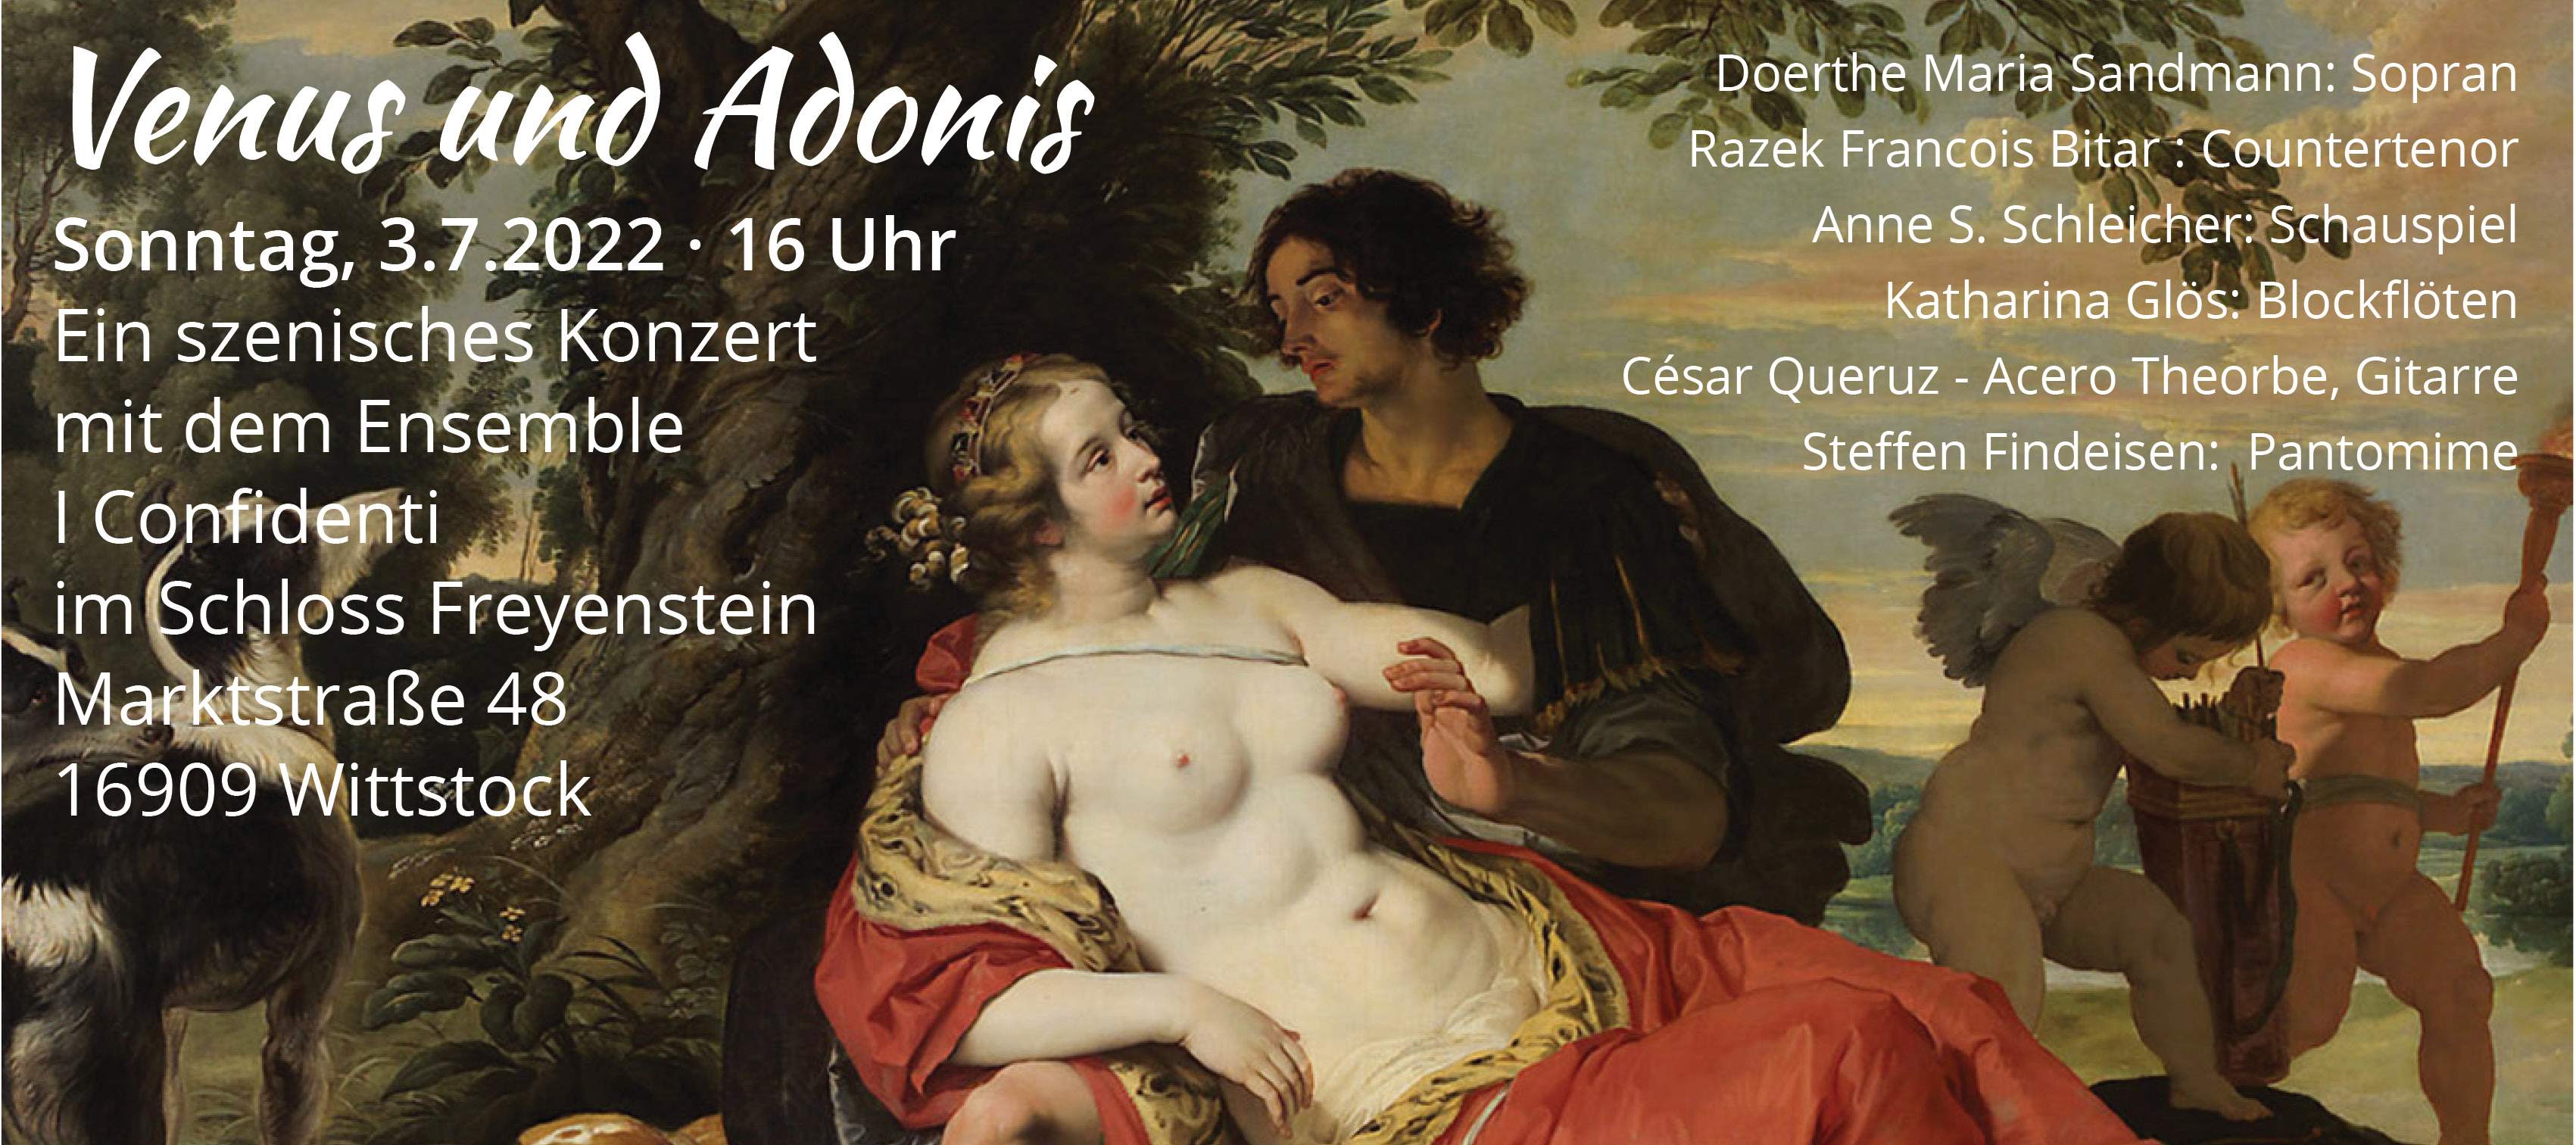 Konzertankündgiung "Venus und Adonis" - ein szenisches Konzert mit I Confidenti am 3.7.2022